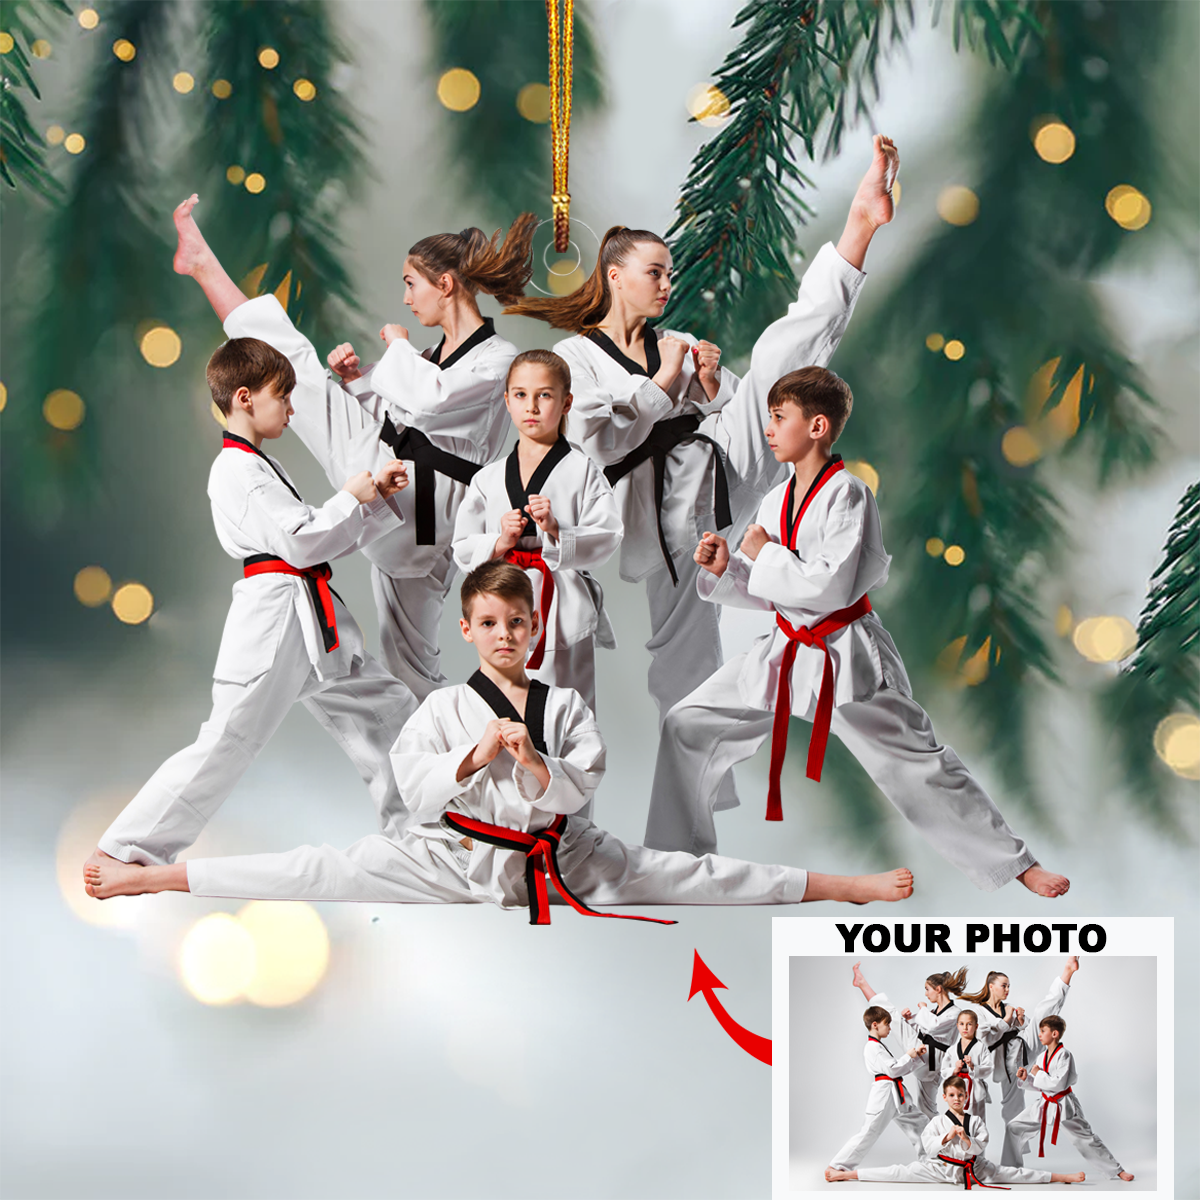 Personalized Taekwondo/Karate Upload Photo Christmas Ornament